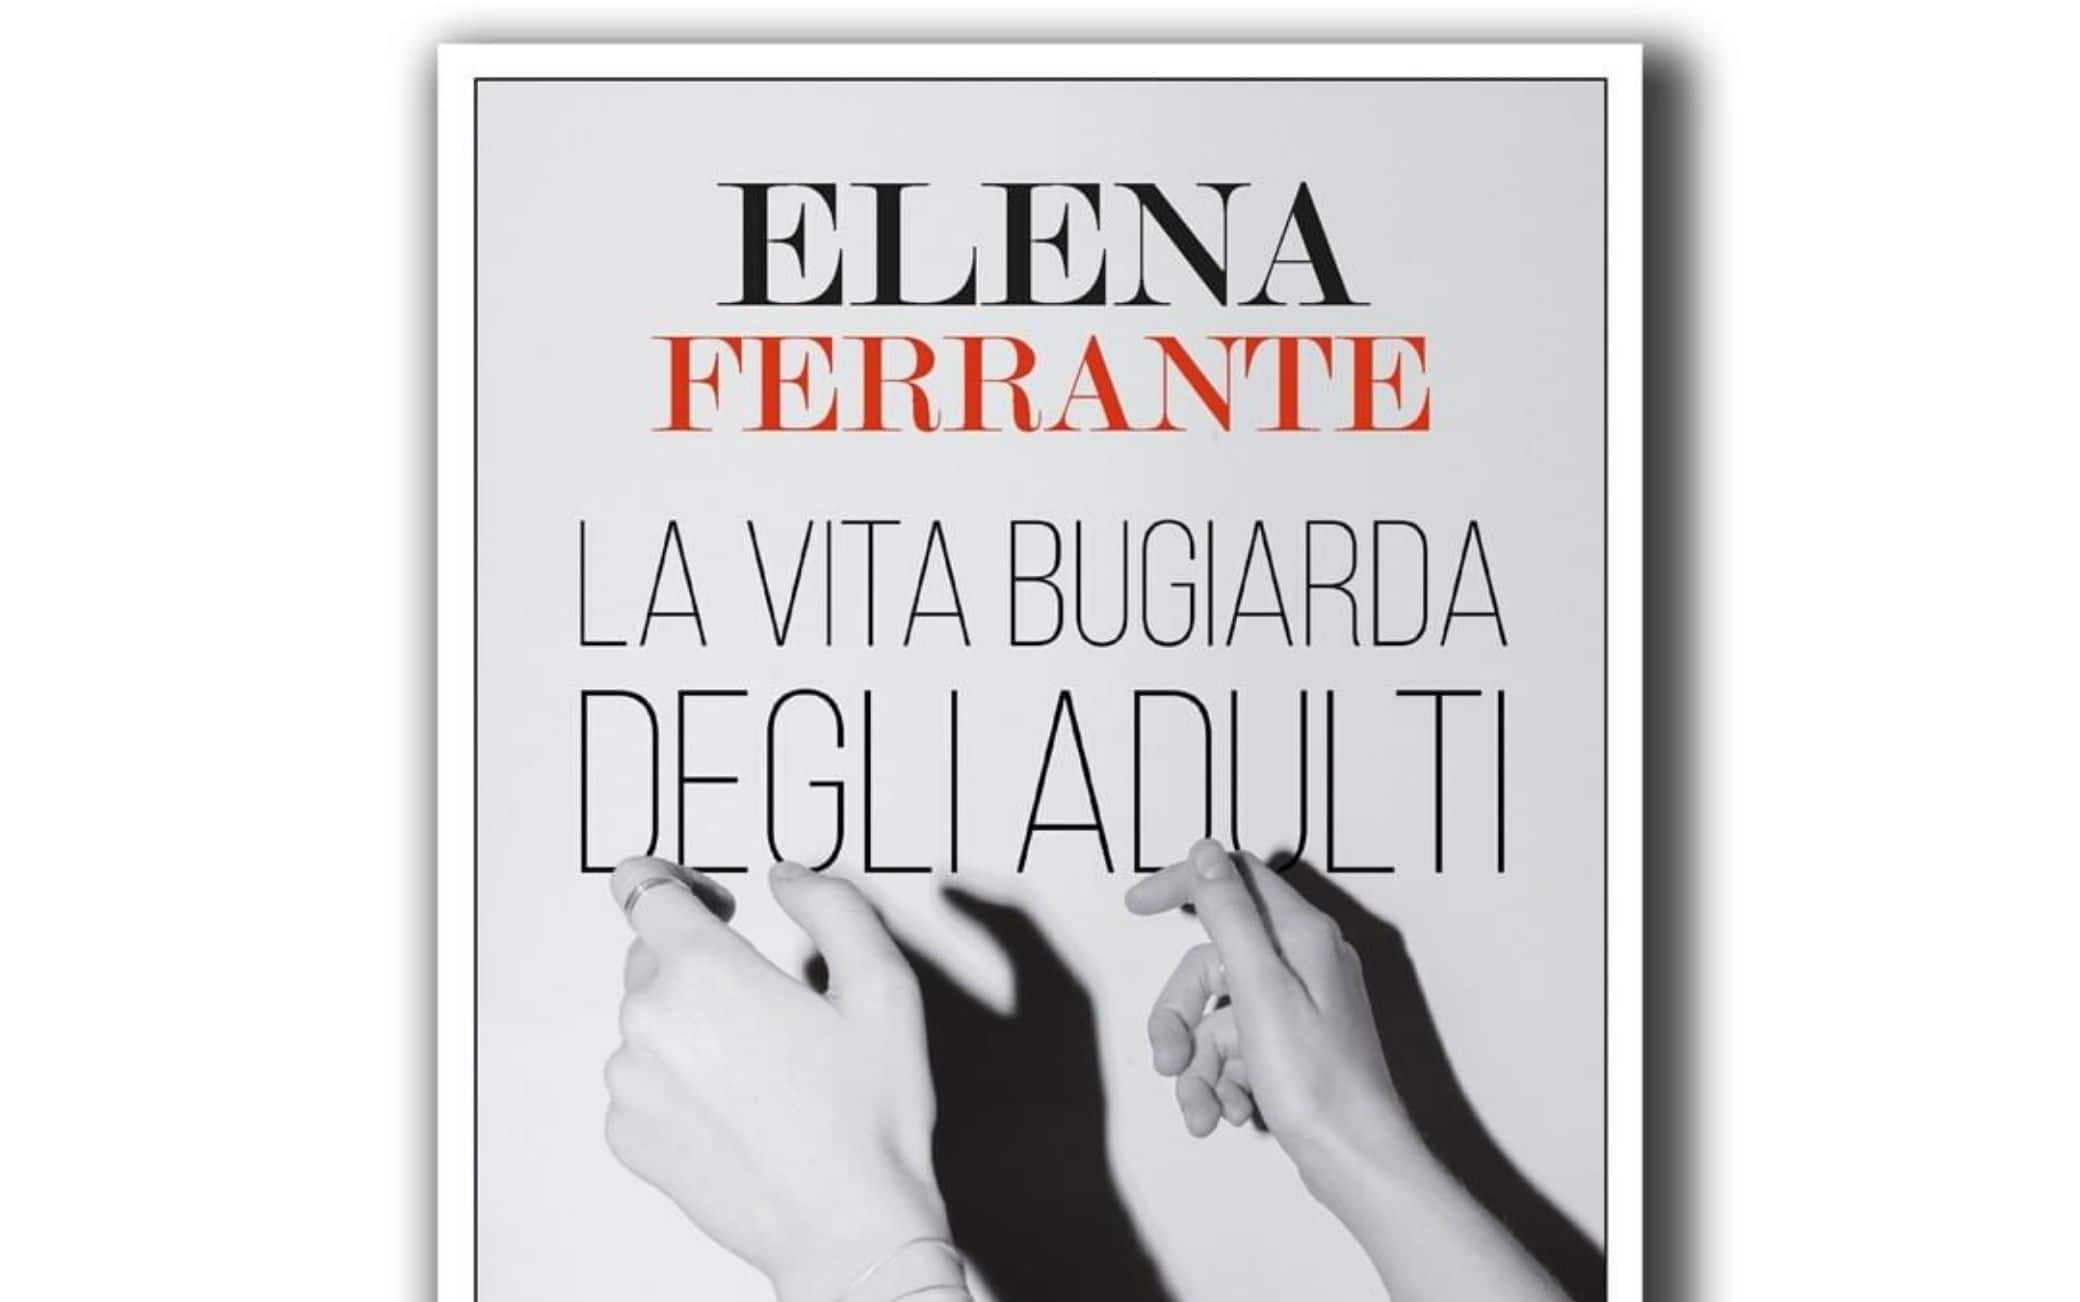 Il 7 novembre uscirà il nuovo libro di Elena Ferrante, autrice de